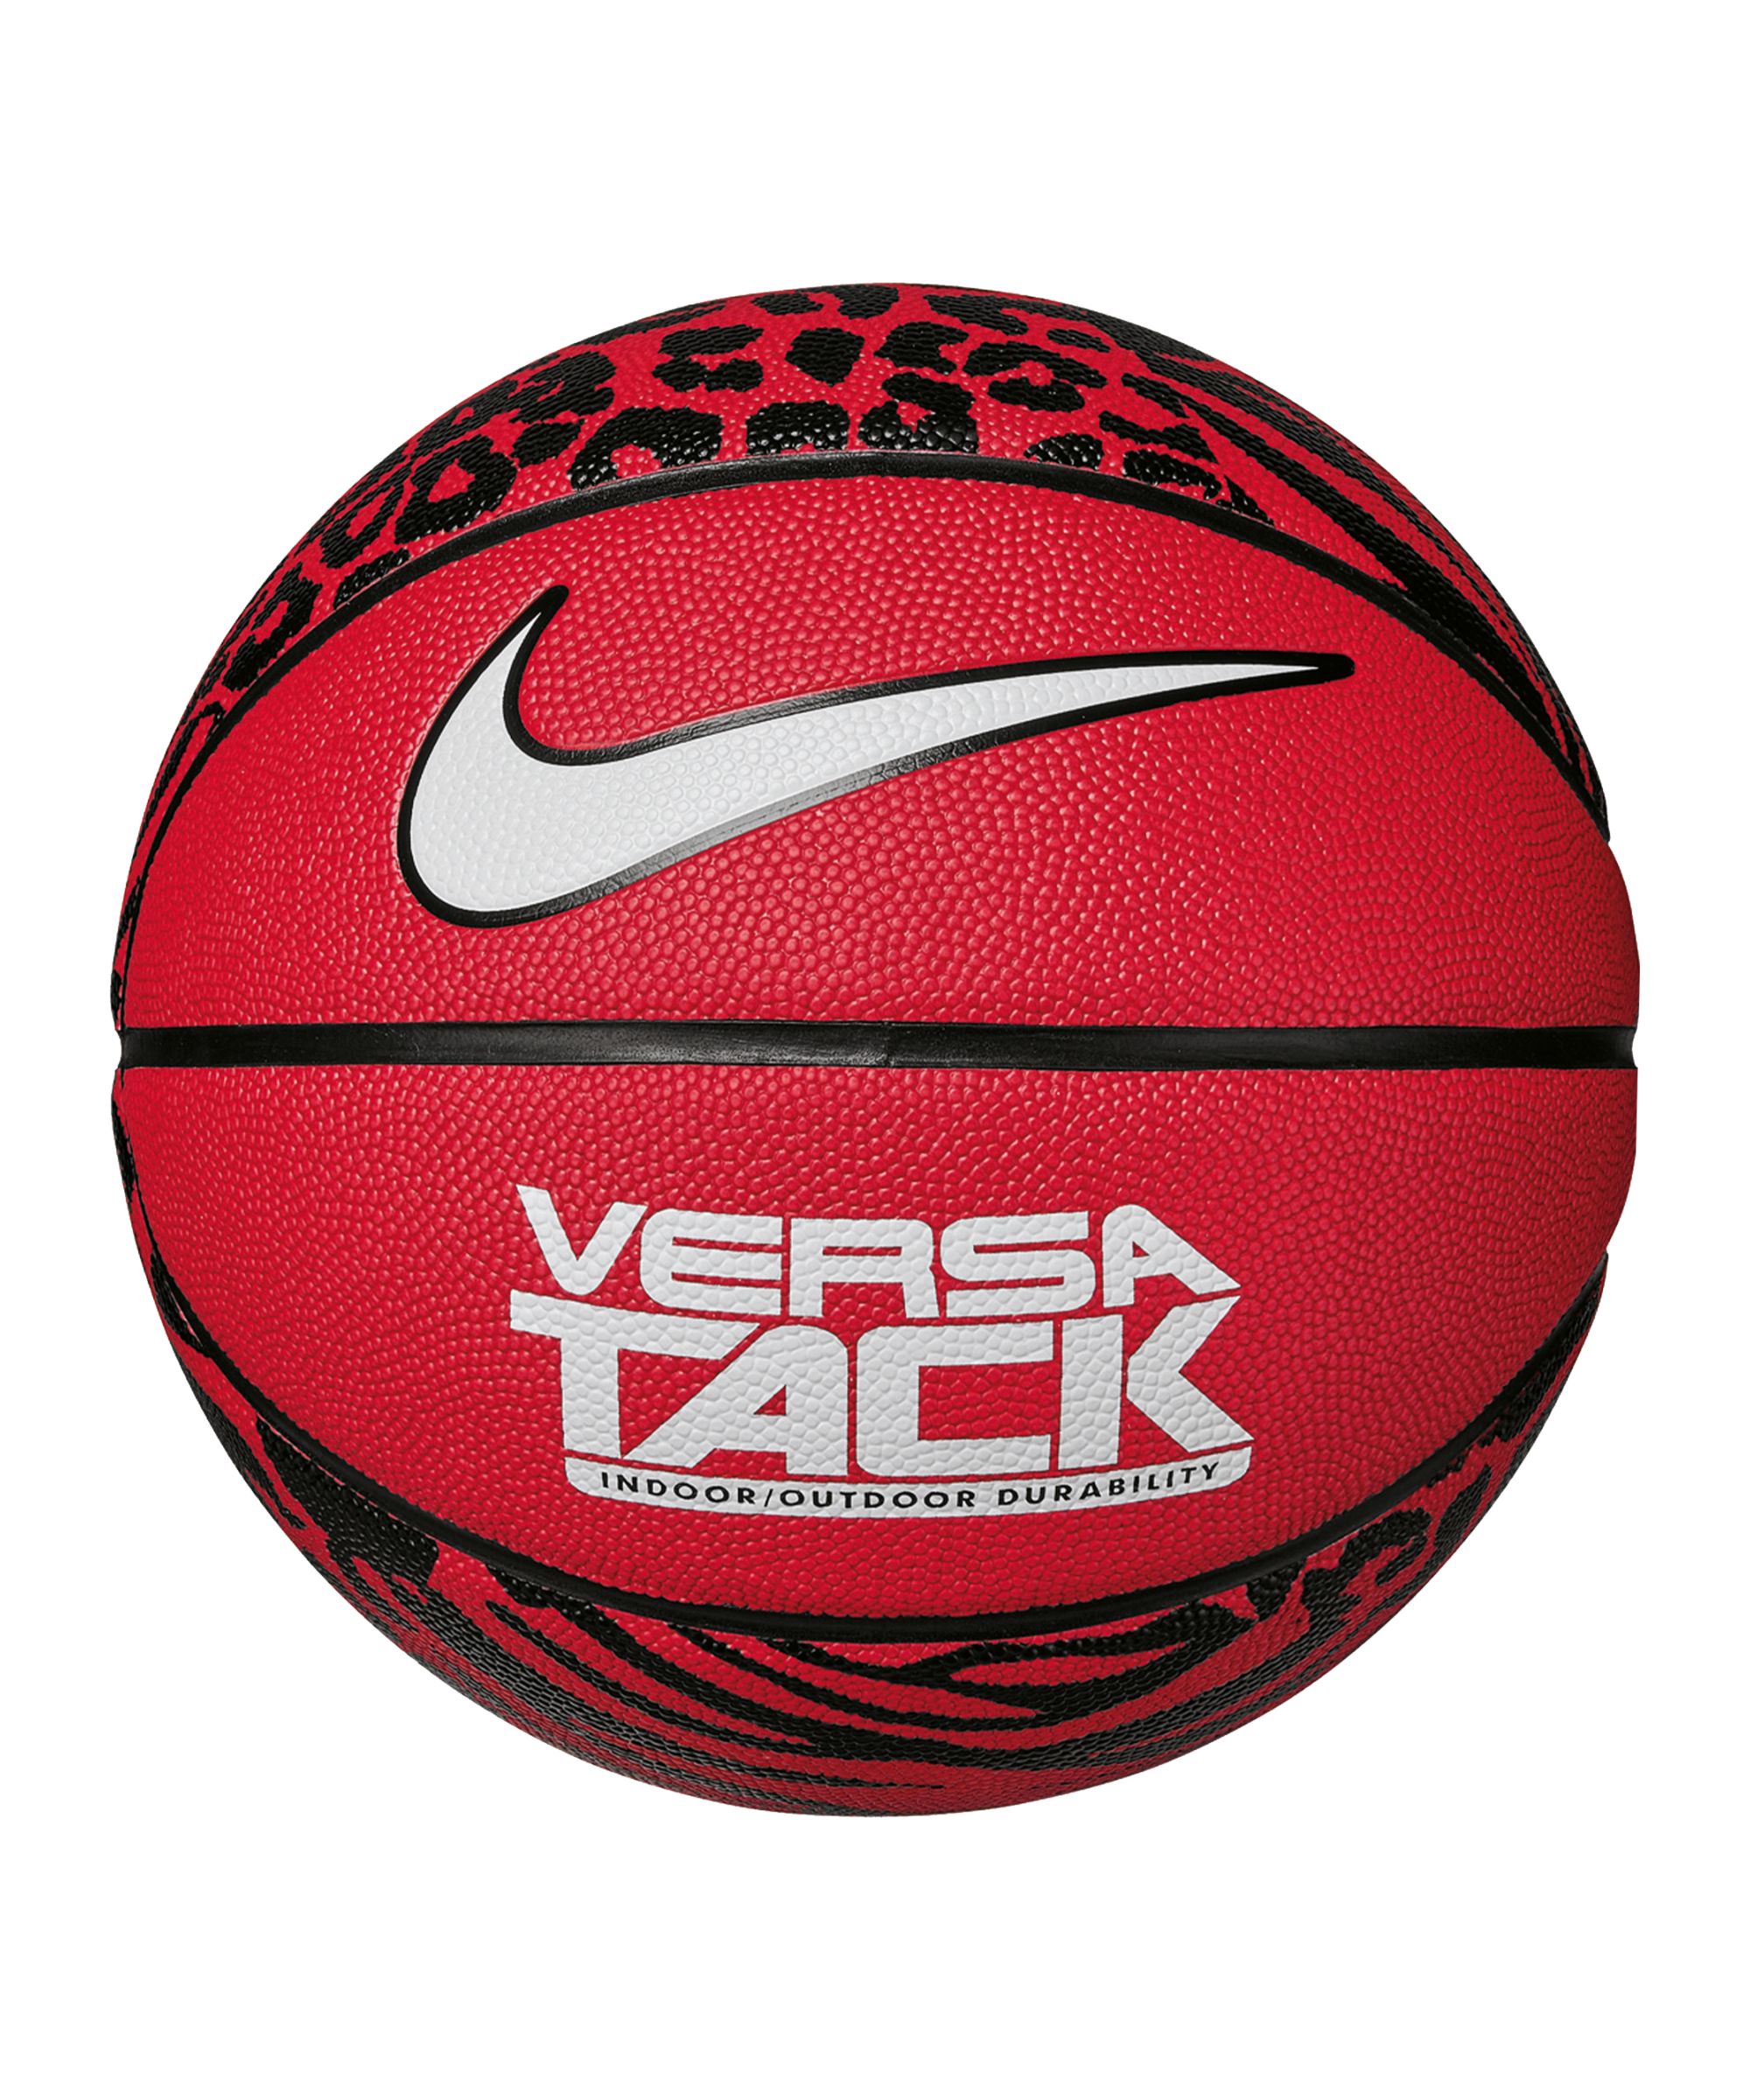 Ball Nike Versa Tack Basketball